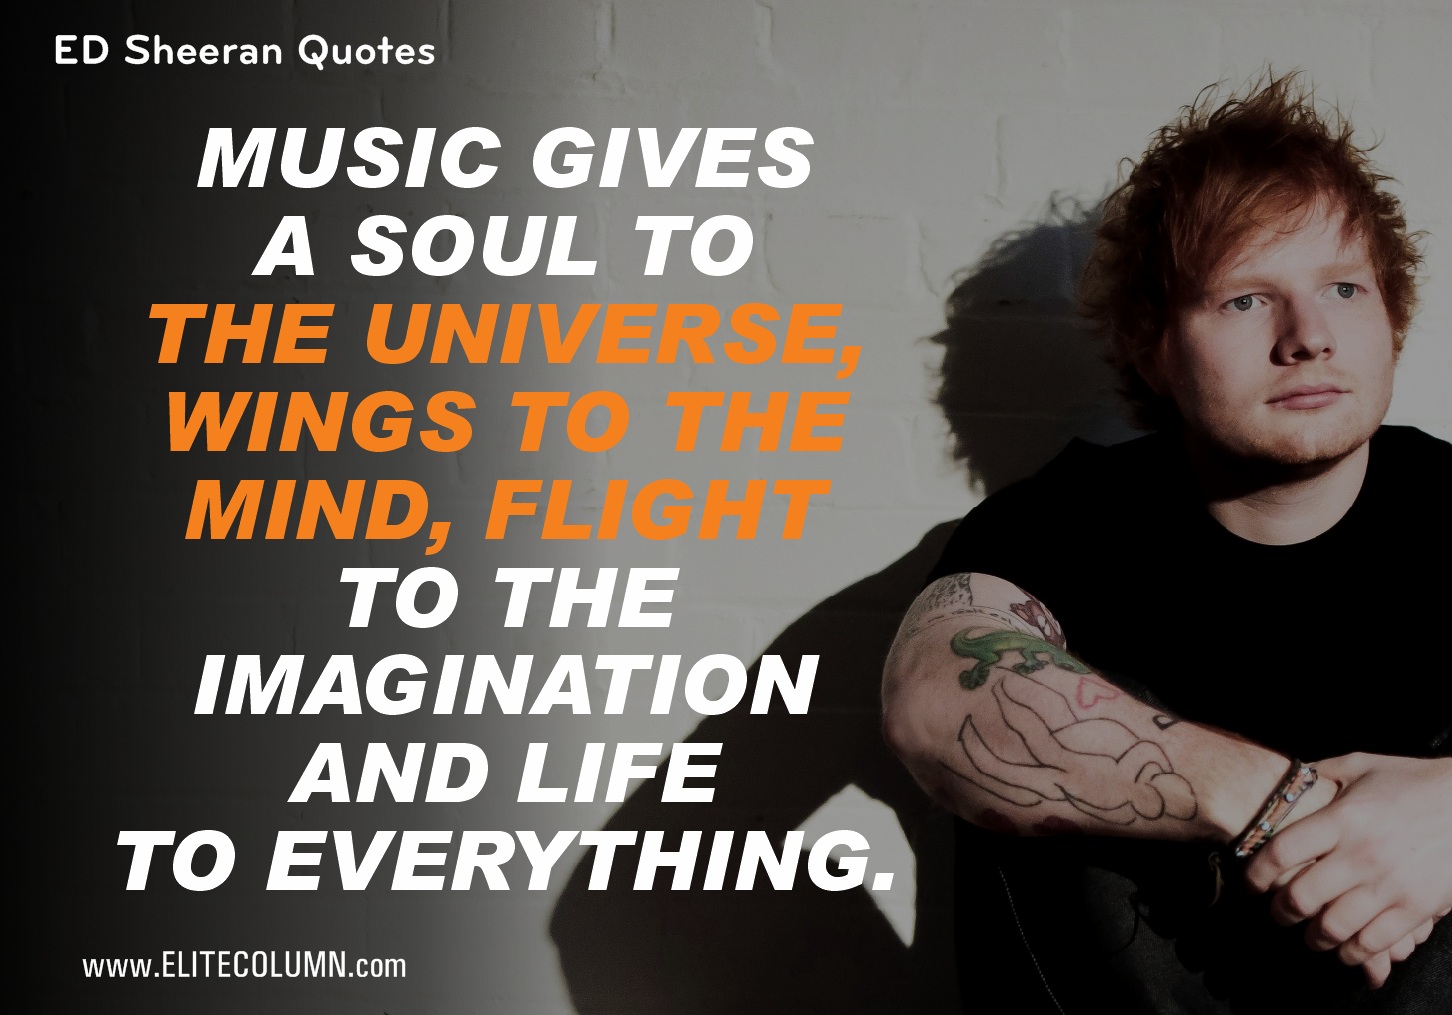 Ed Sheeran Quotes (10)